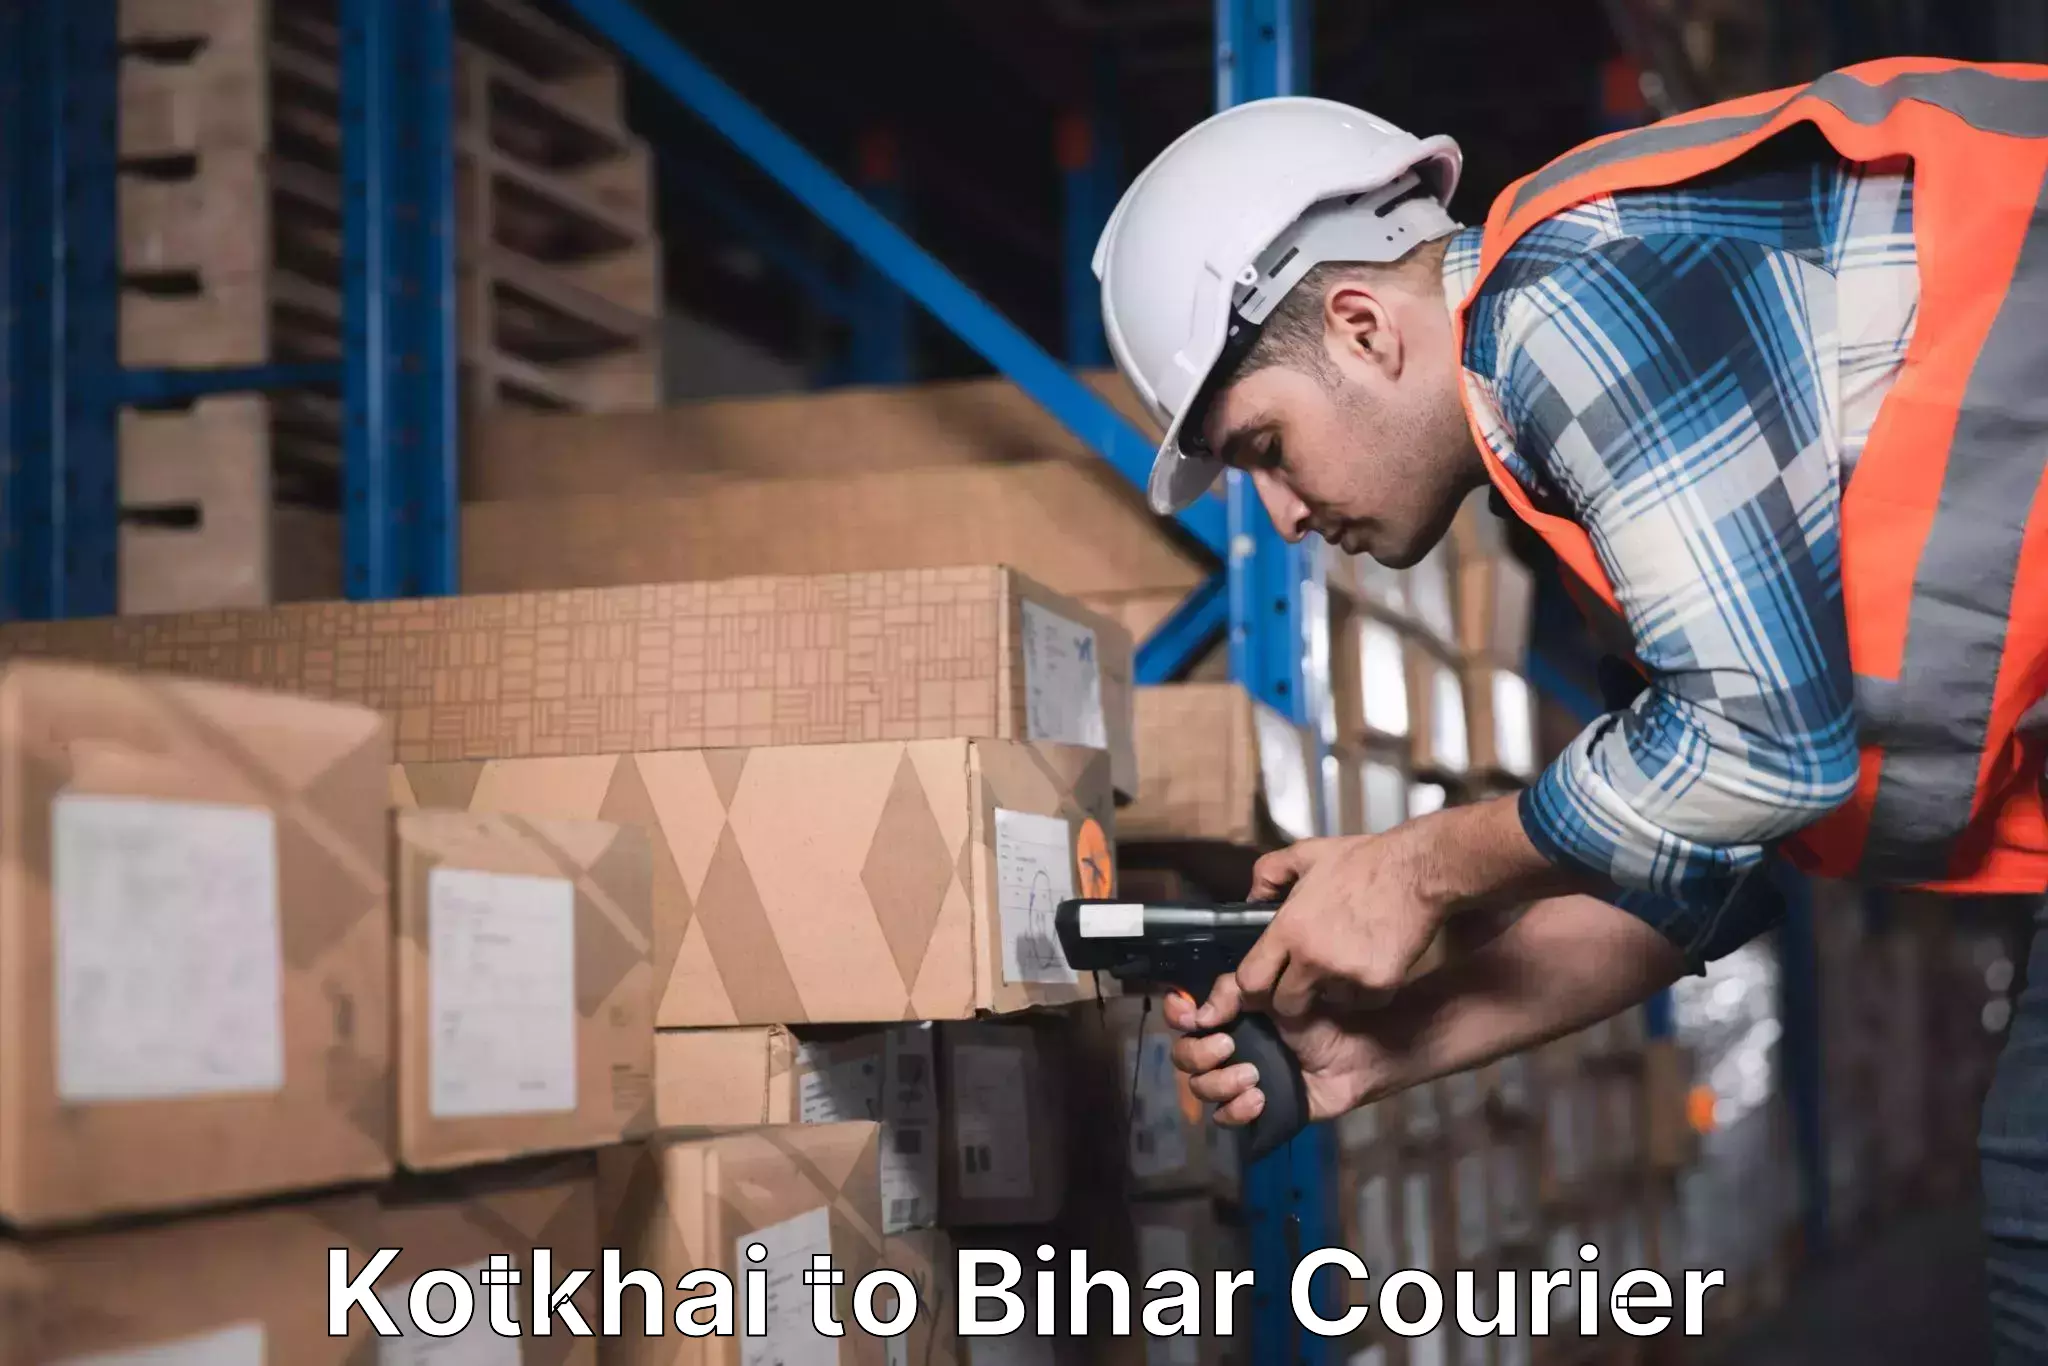 Delivery service partnership Kotkhai to Bikramganj